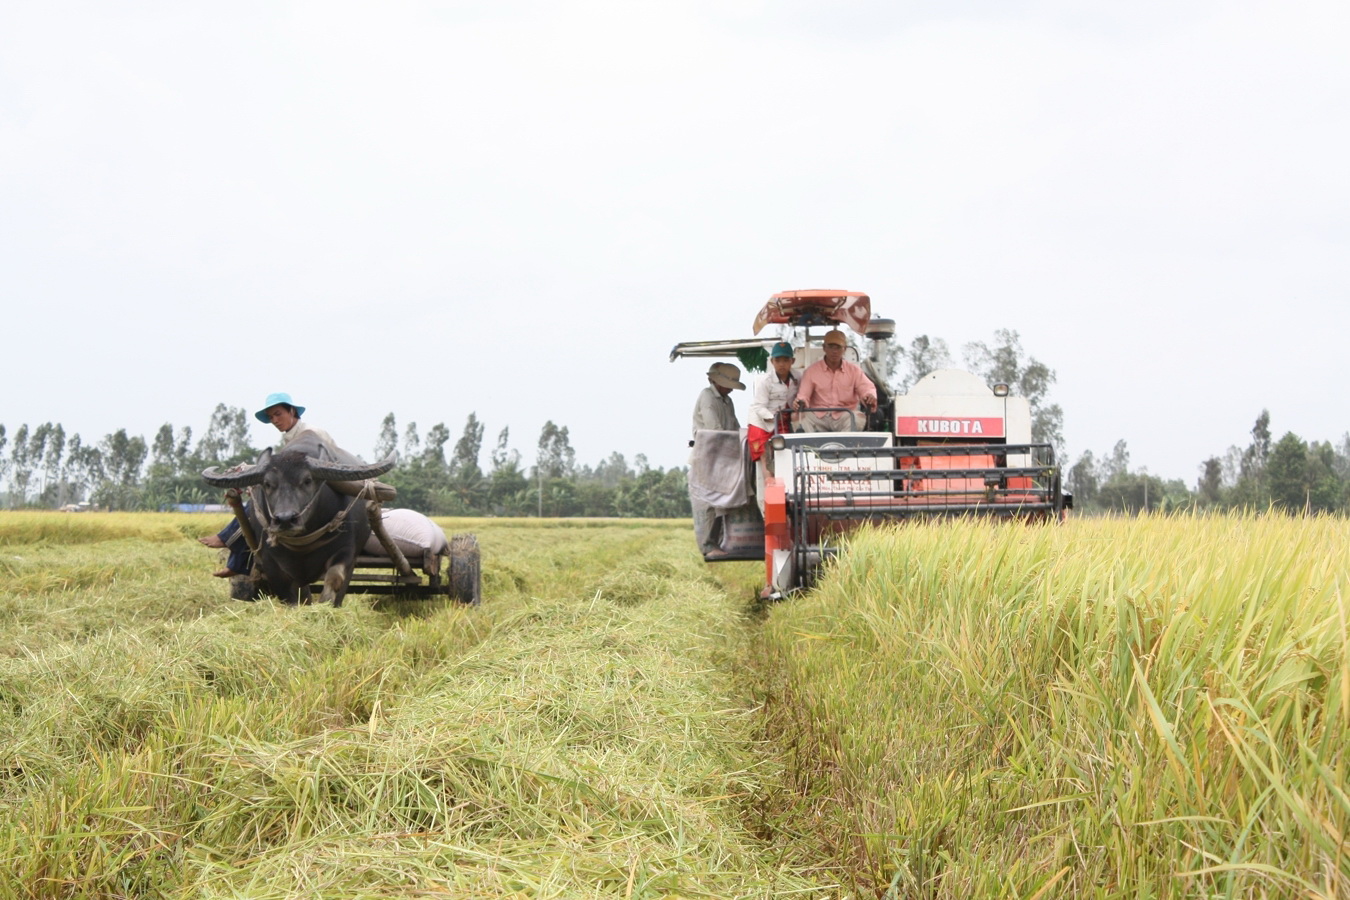 nhằm gia tăng giá trị, phát triển bền vững ngành lúa gạo, nâng cao hiệu quả sản xuất kinh doanh, thu nhập và đời sống của người trồng lúa;